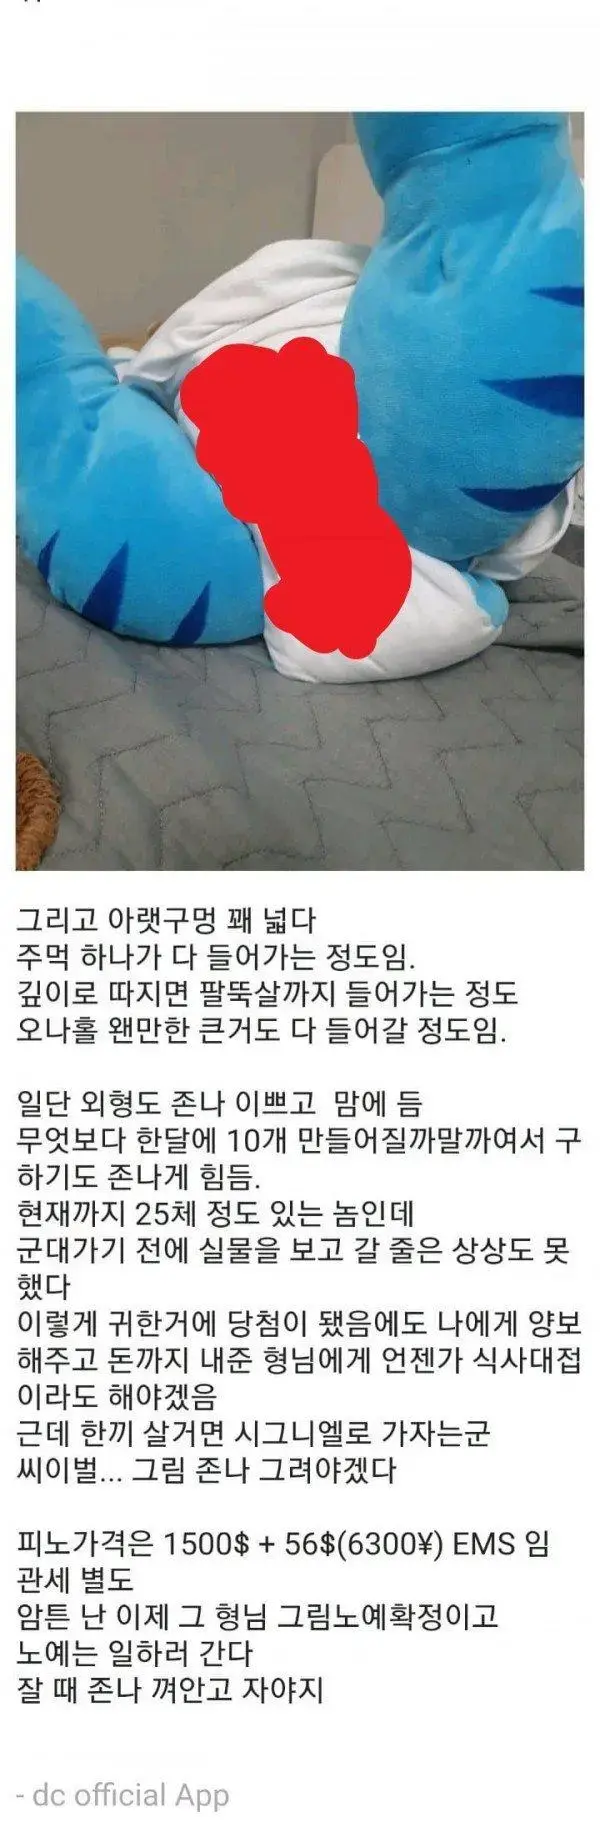 싱글벙글 가능한 크기의 리얼돌 사용 후기.dc | mbong.kr 엠봉